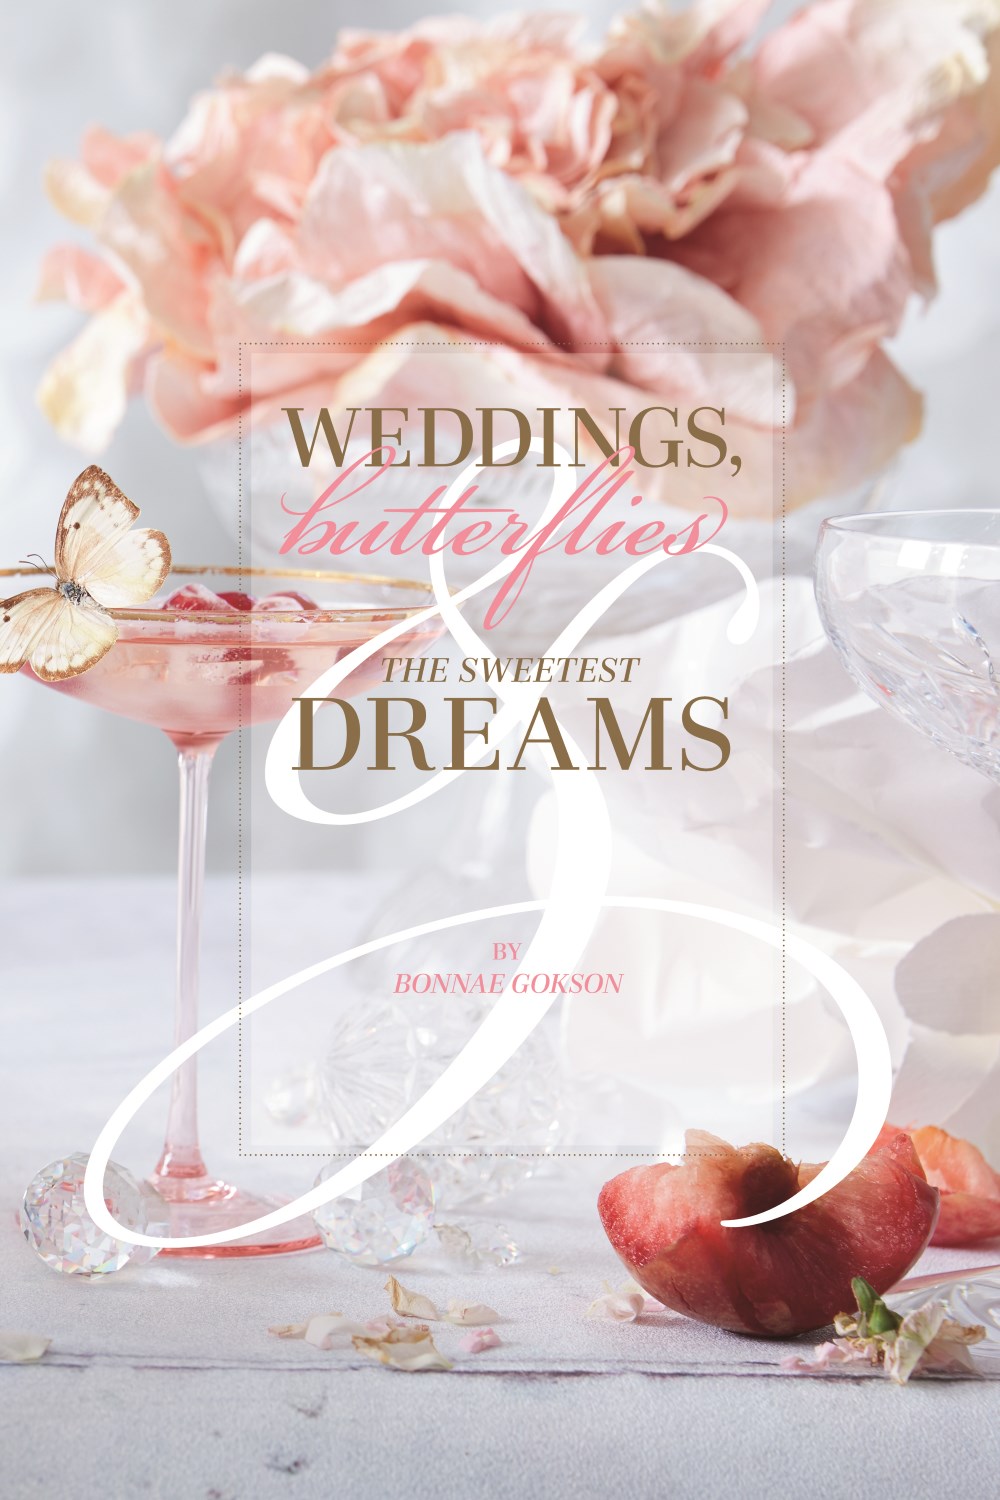 Weddings, Butterflies & The Sweetest Dreams by Bonnae Gokson